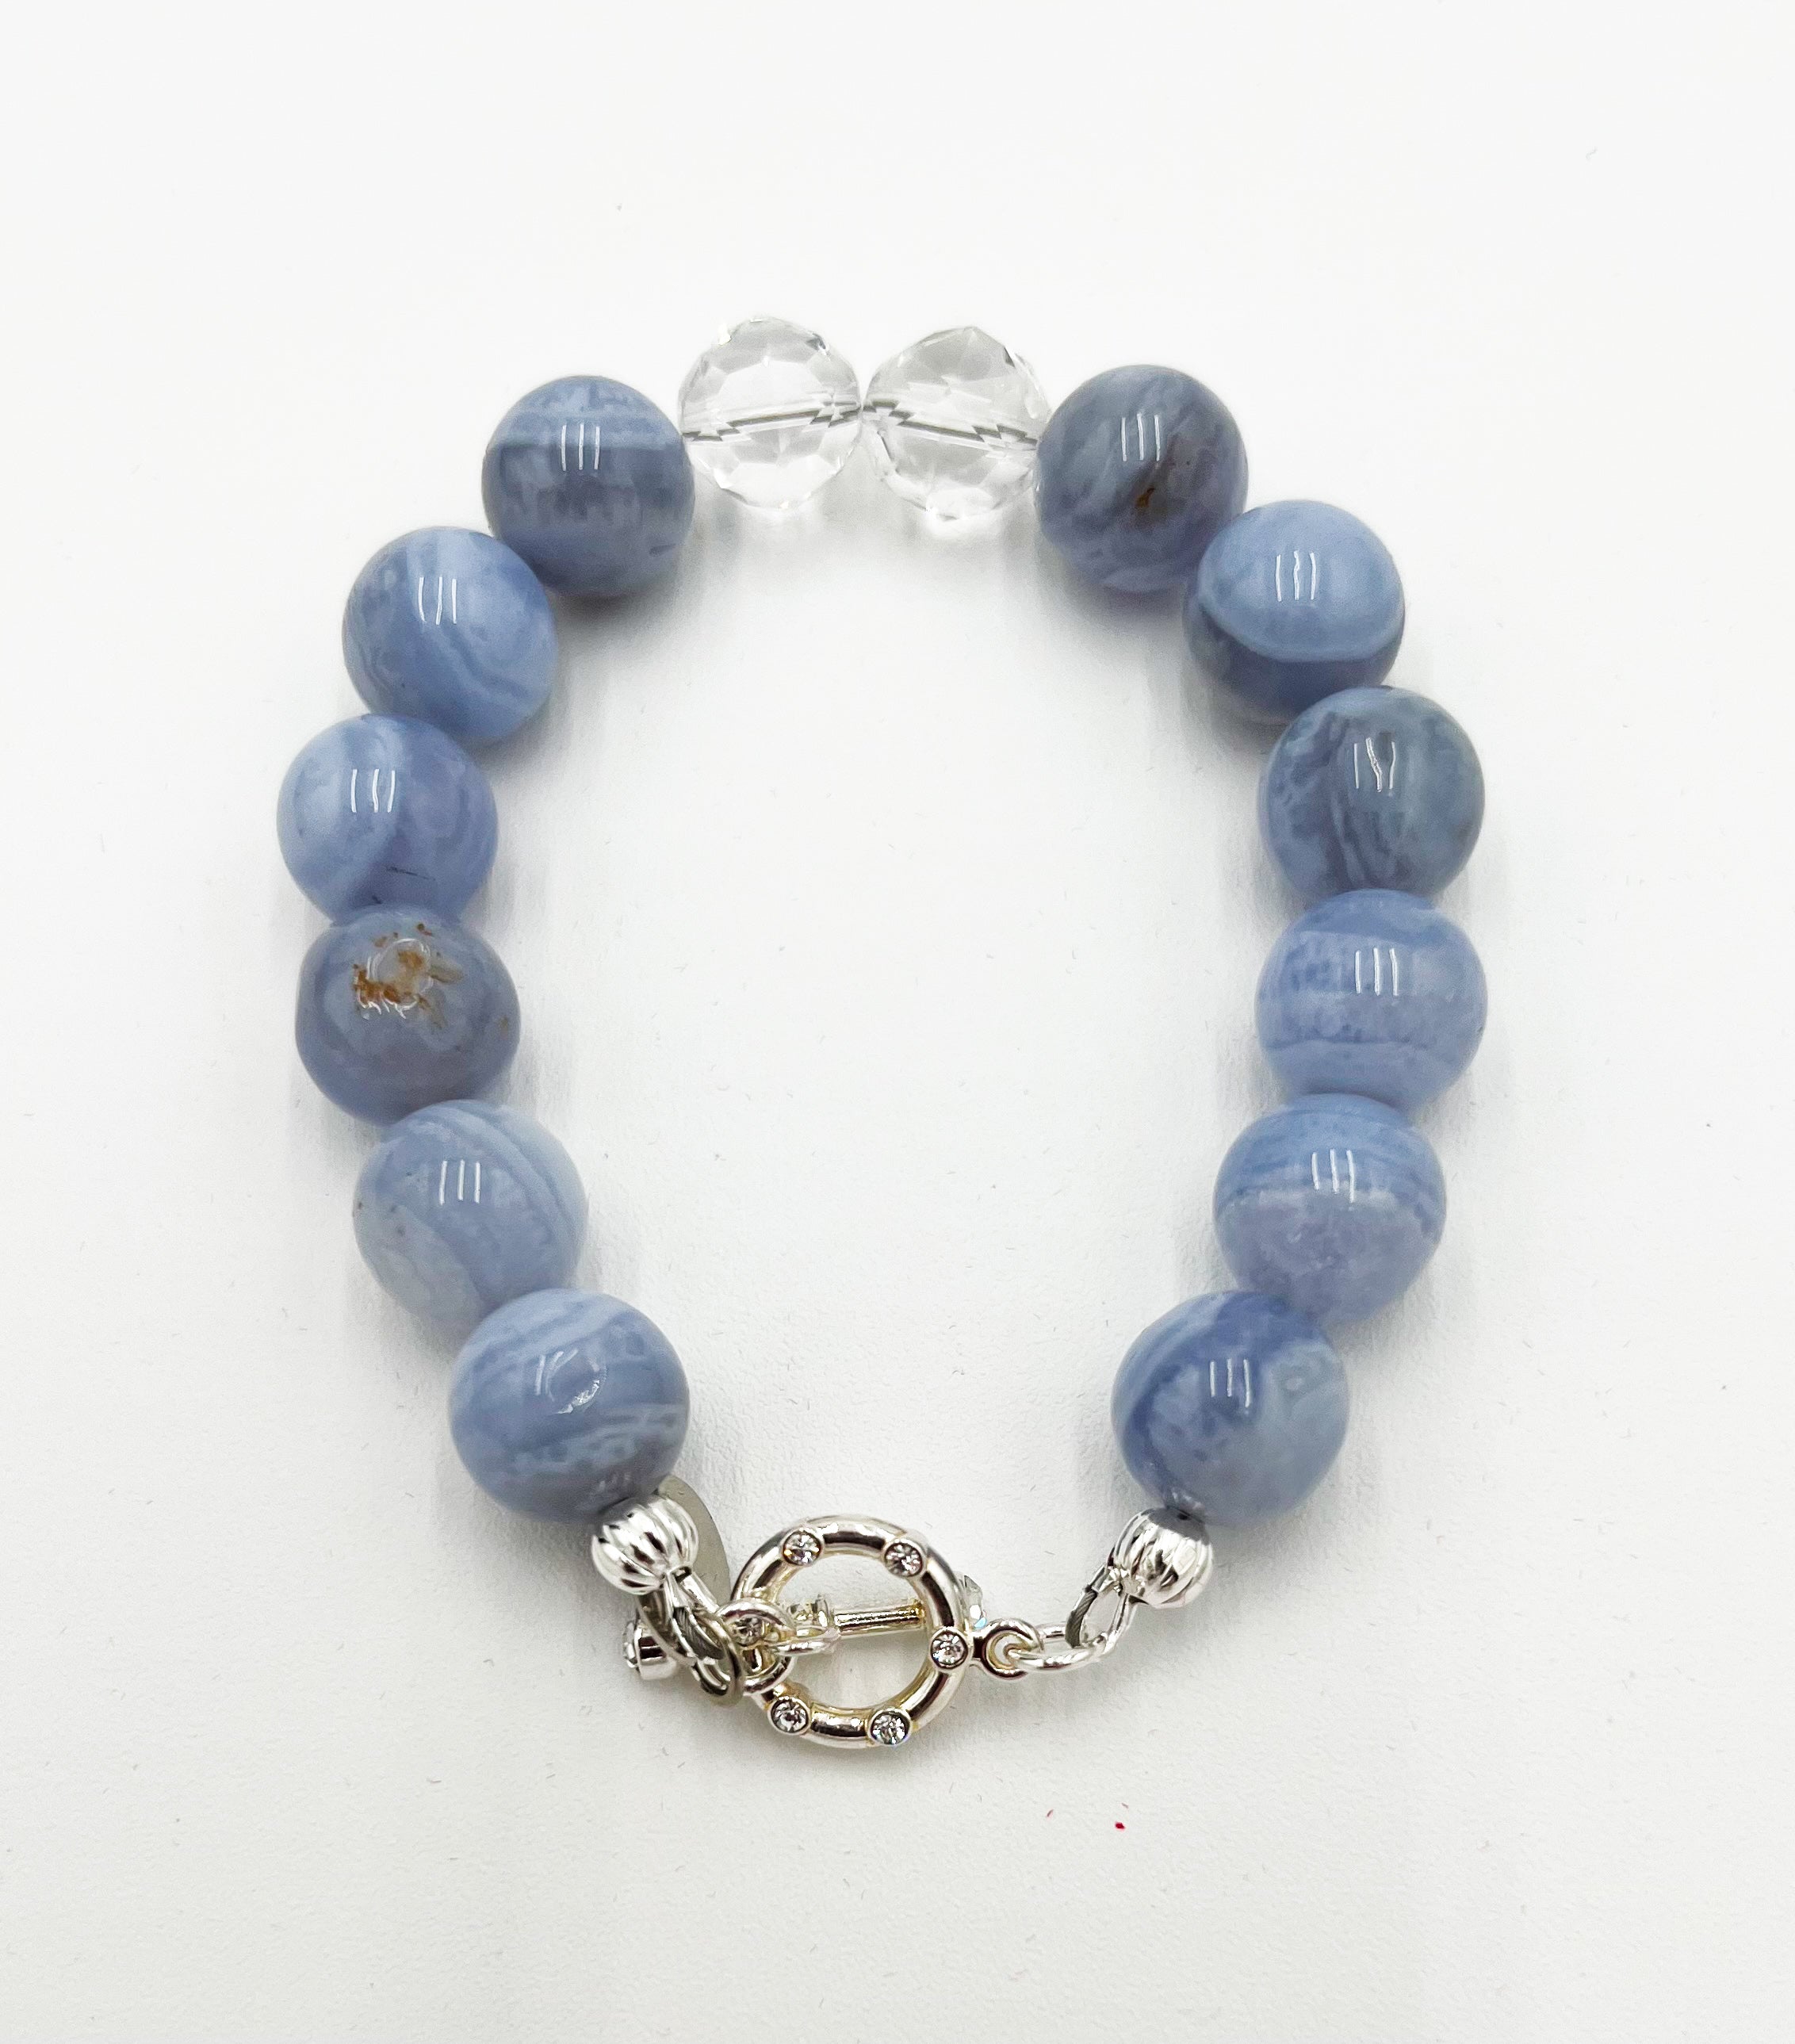 Blue Lace Agate & Natural Rock Quartz Bracelet 6 1/4"